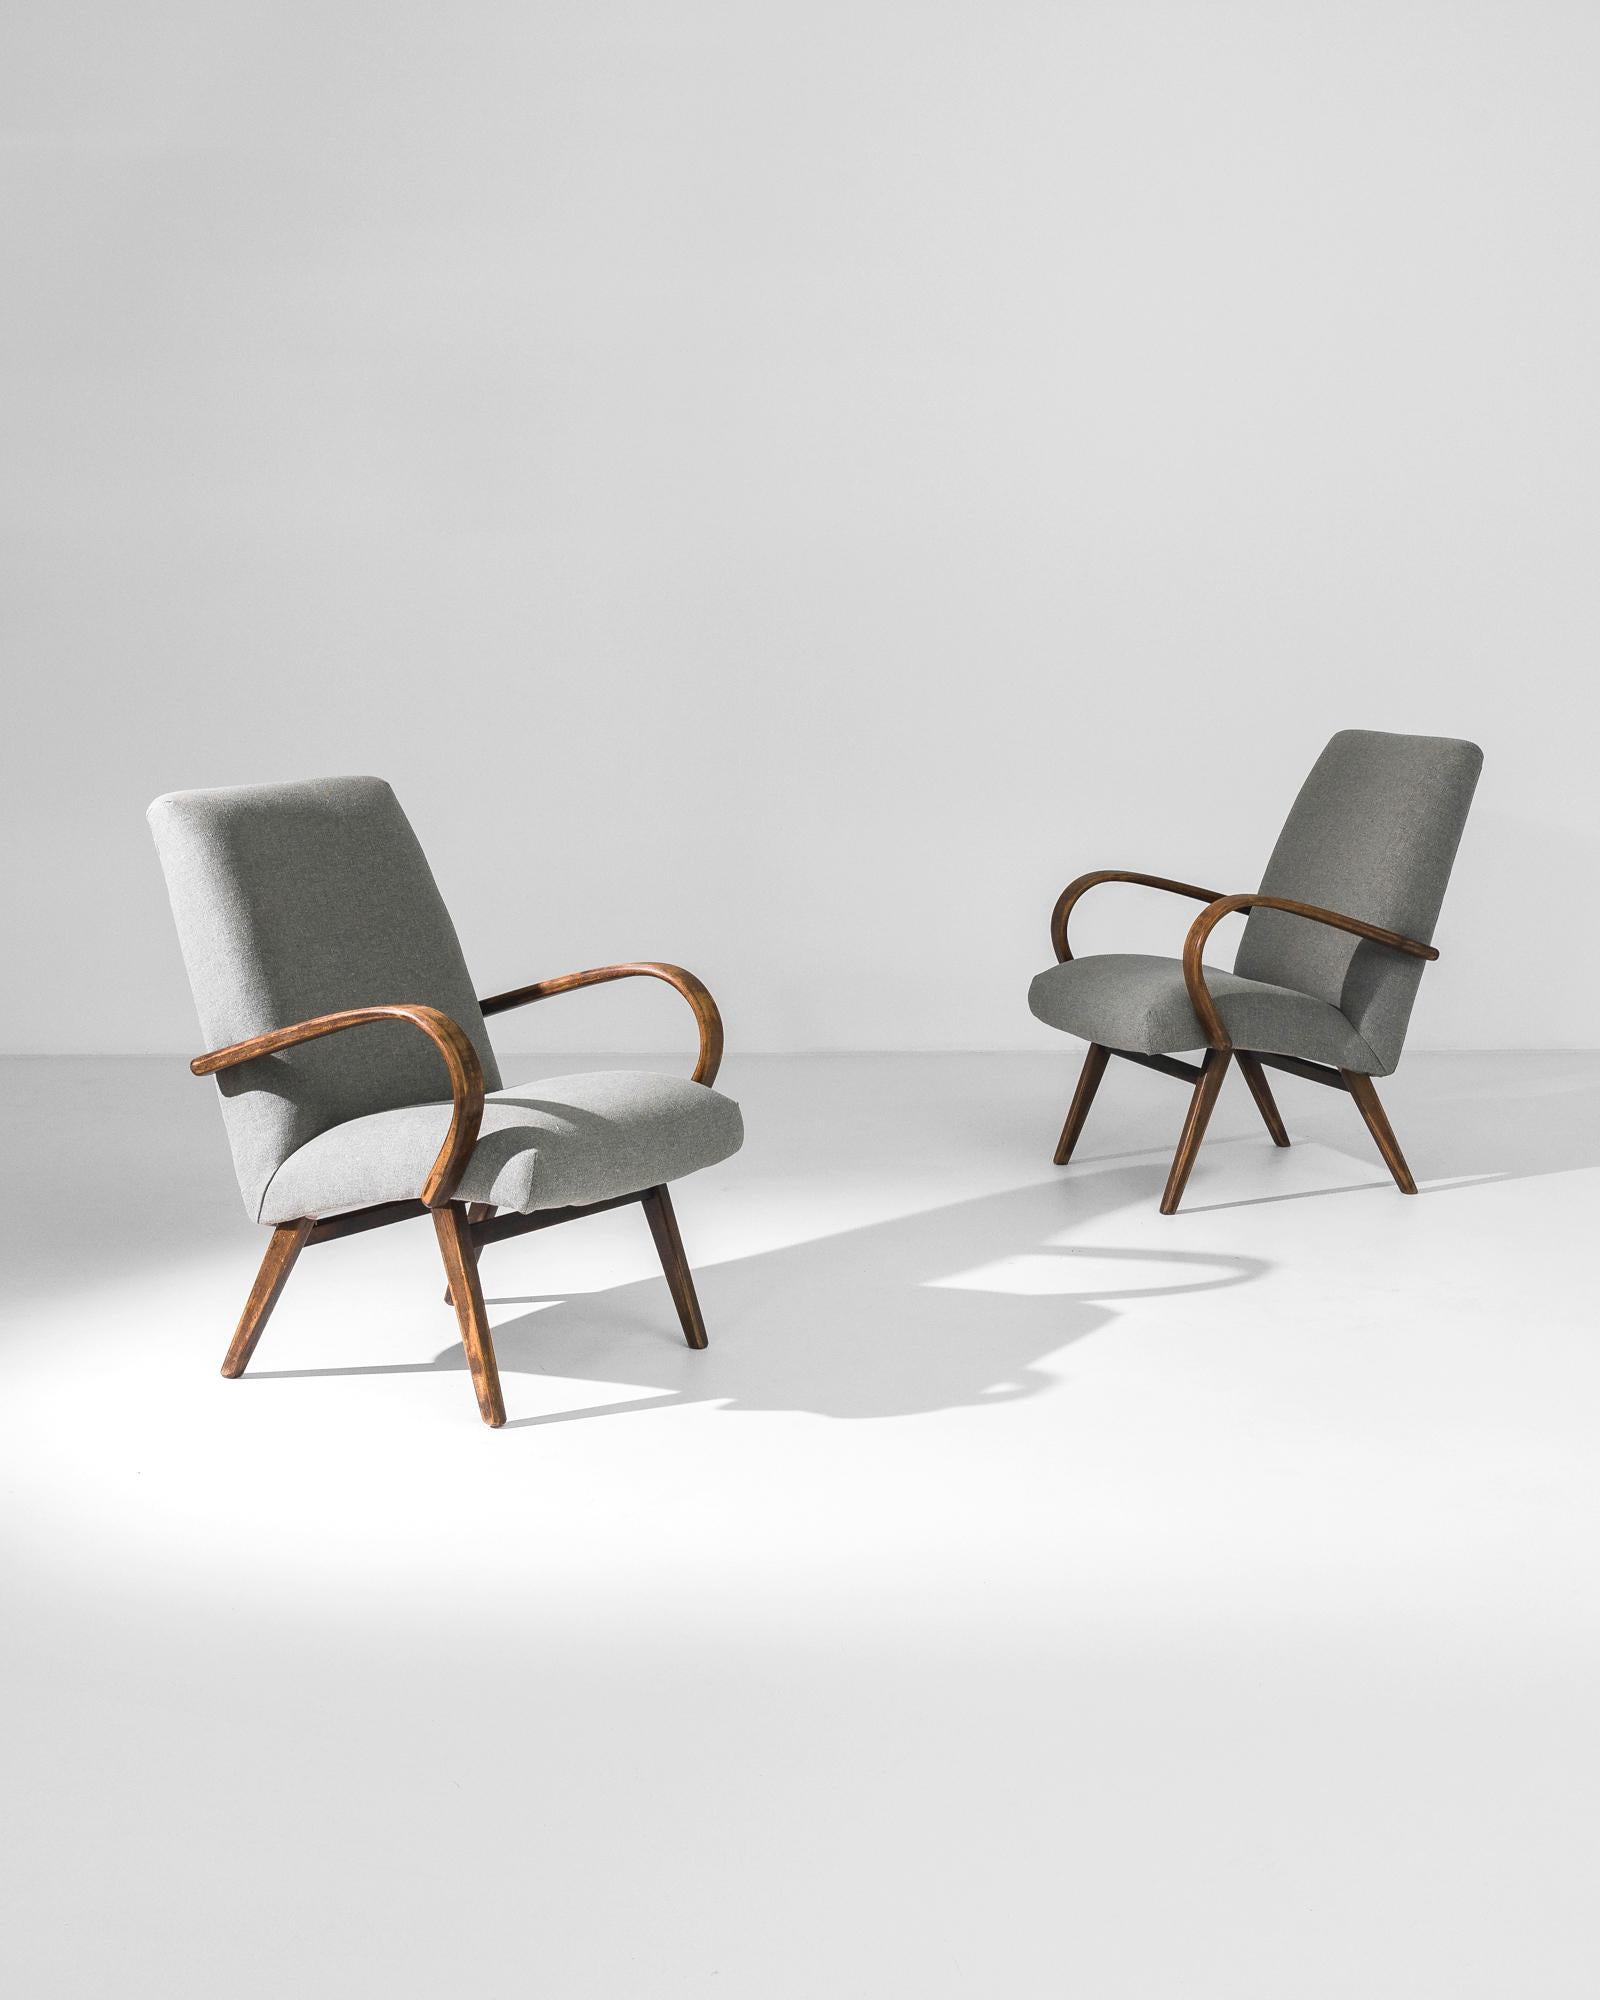 Fabriquée dans l'ancienne Tchécoslovaquie, cette paire de fauteuils en bois courbé datant d'environ 1950 a été retapissée avec un tissu gris moderne. Le mélange de coton et de lin a été choisi pour compléter l'élégance vintage du cadre en bois dur